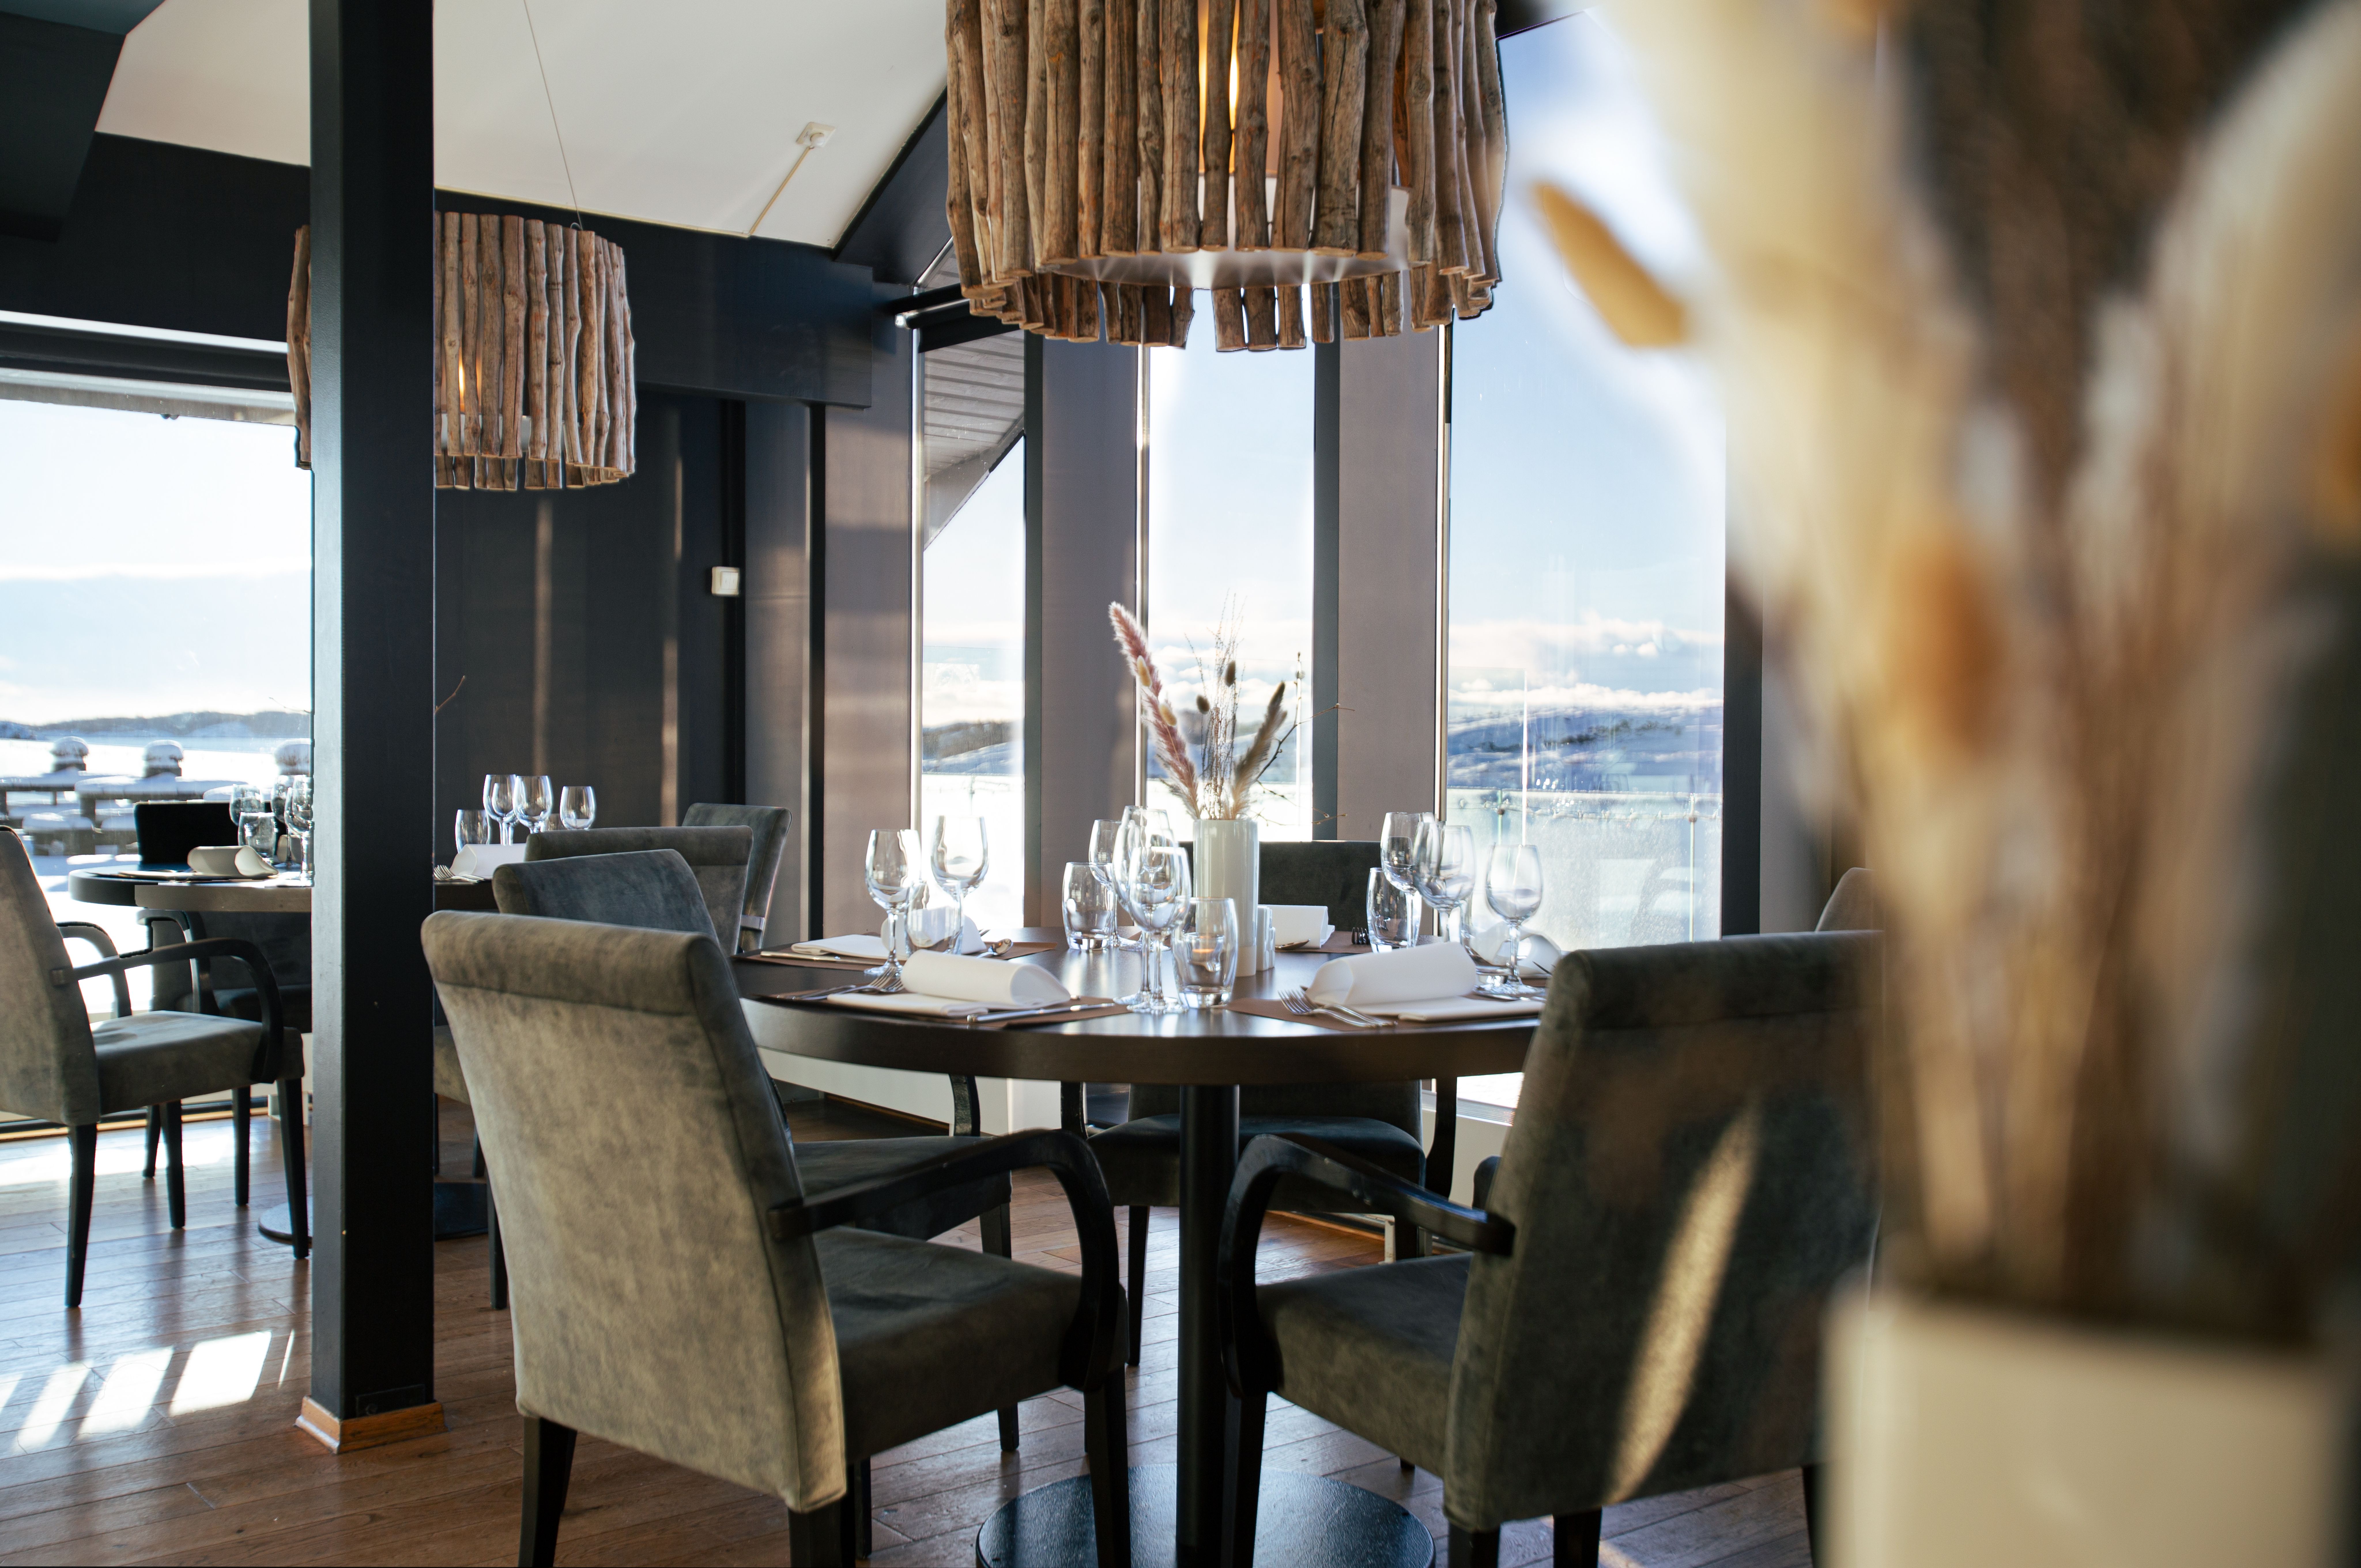 Restaurant vesterled med utsikt utover Austefjorden